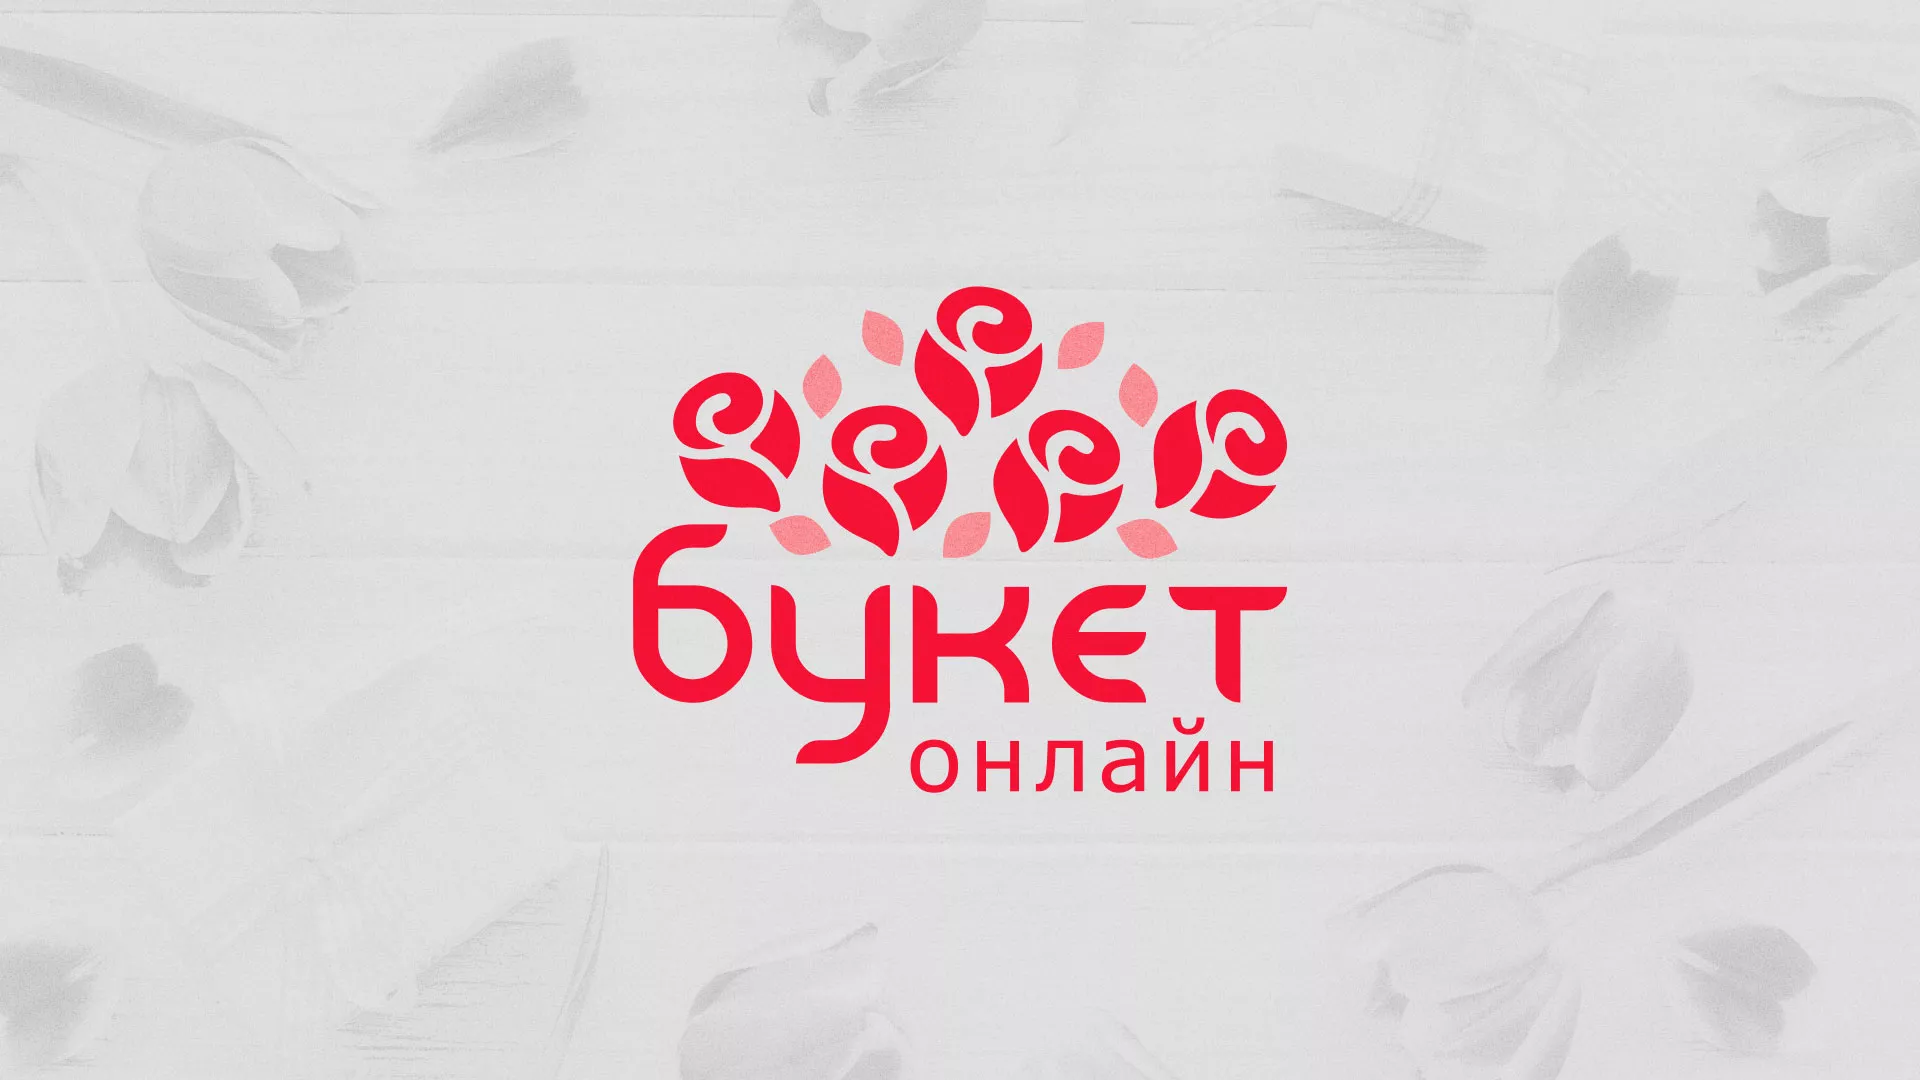 Создание интернет-магазина «Букет-онлайн» по цветам в Горно-Алтайске